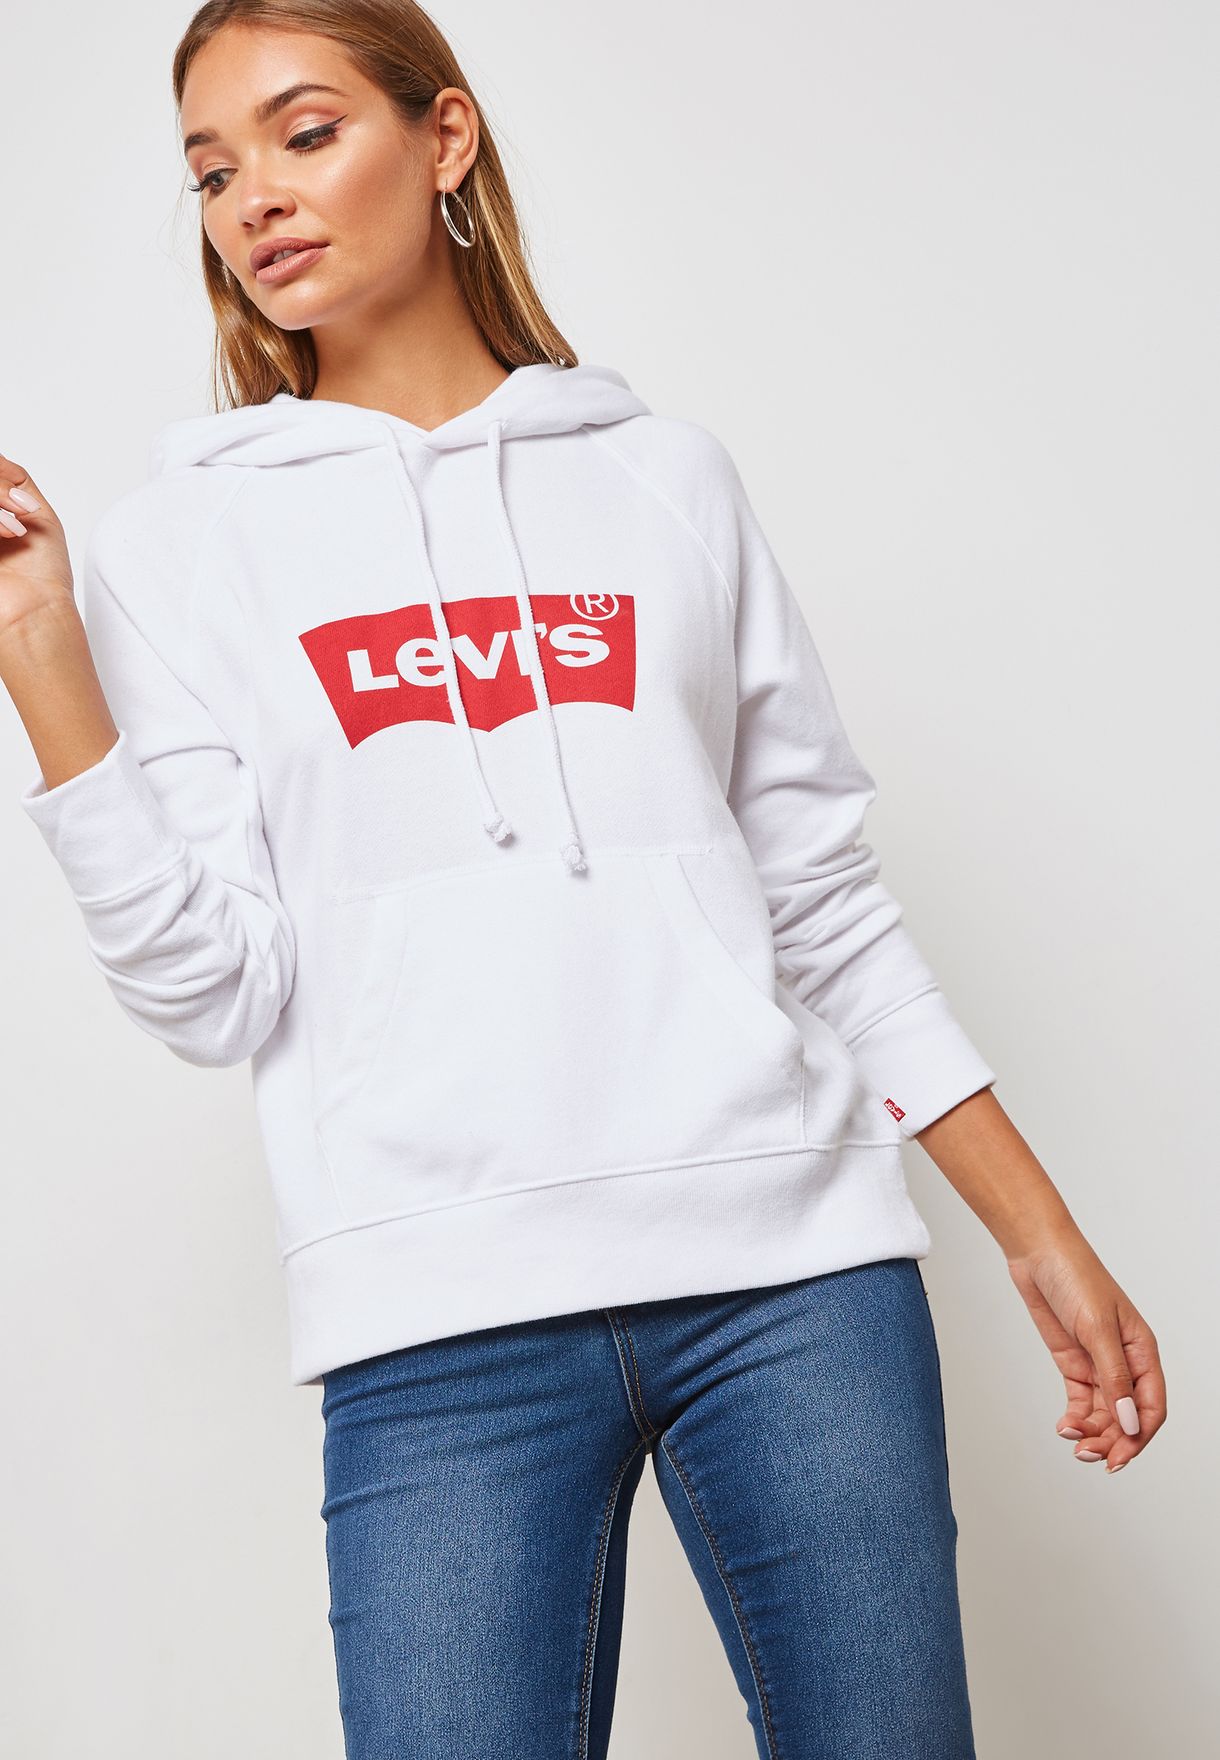 levis hoodie women's